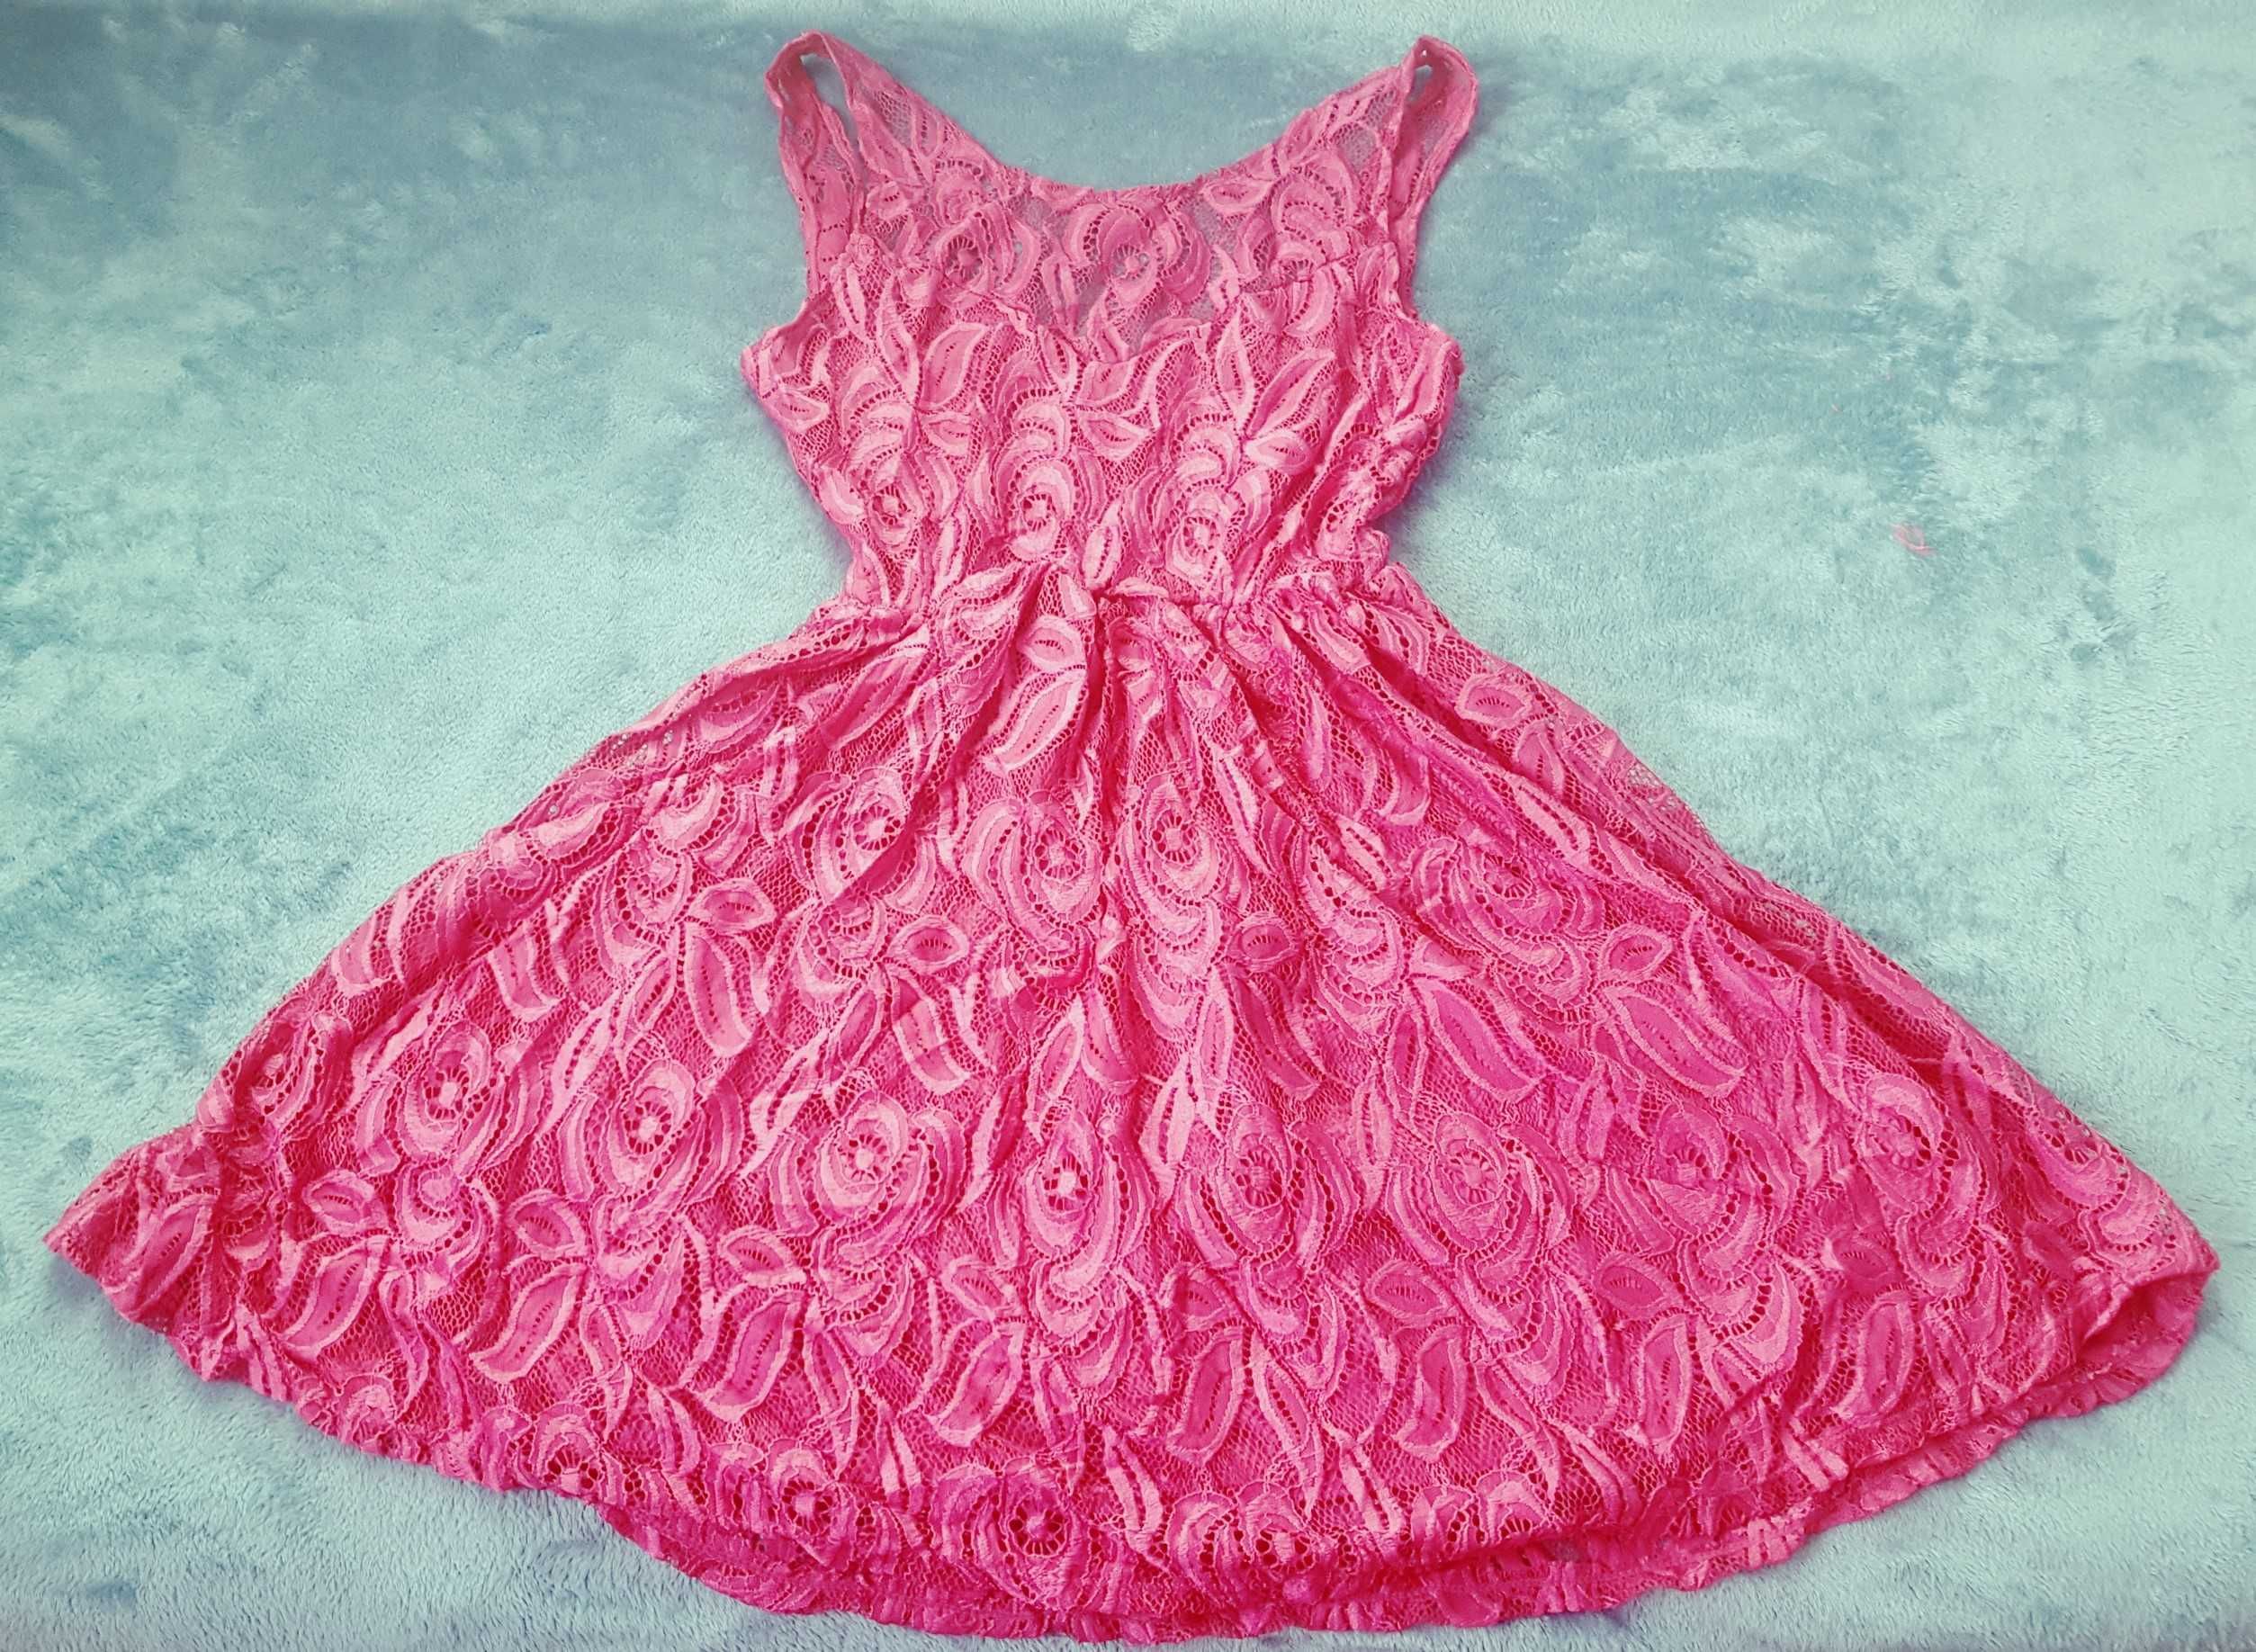 Bordowa koronkowa sukienka skater z odkrytymi plecami, rozmiar 38 - 40